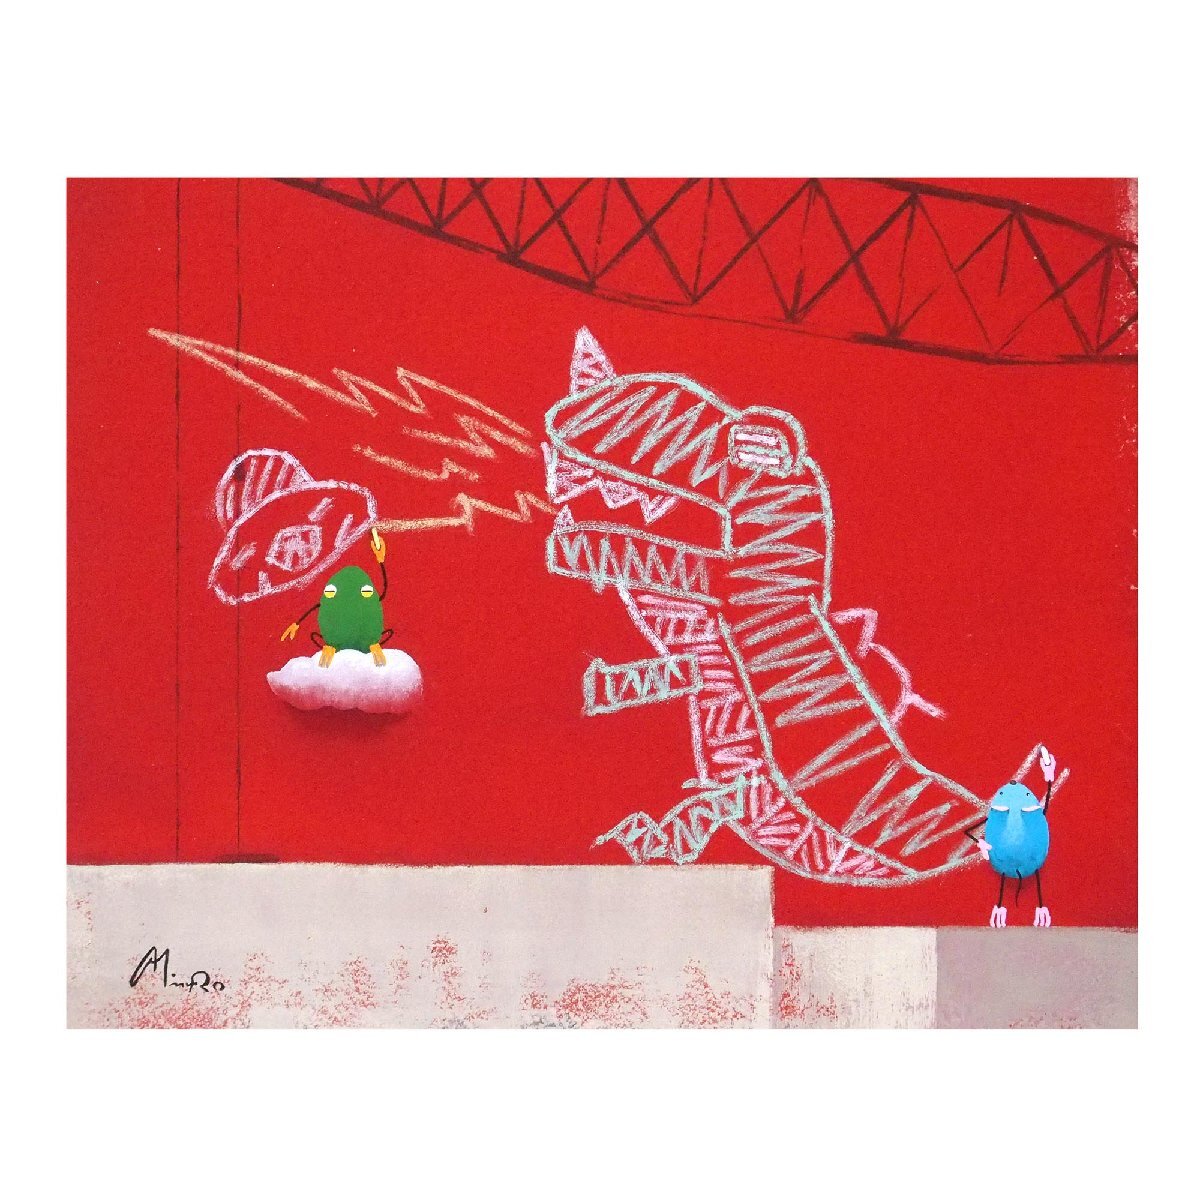 Hiroyuki Mimuro Red Board / Acryl Nr. 3 auf der Tafel / Illustrationen und Unterschriften auf der Rücktafel / Abschluss an der Fakultät für Design, Fakultät der Schönen Künste, Universität der Künste Tokio / Garantierte Authentizität / ENCHANTE, Kunstwerk, Malerei, Acryl, Gouache